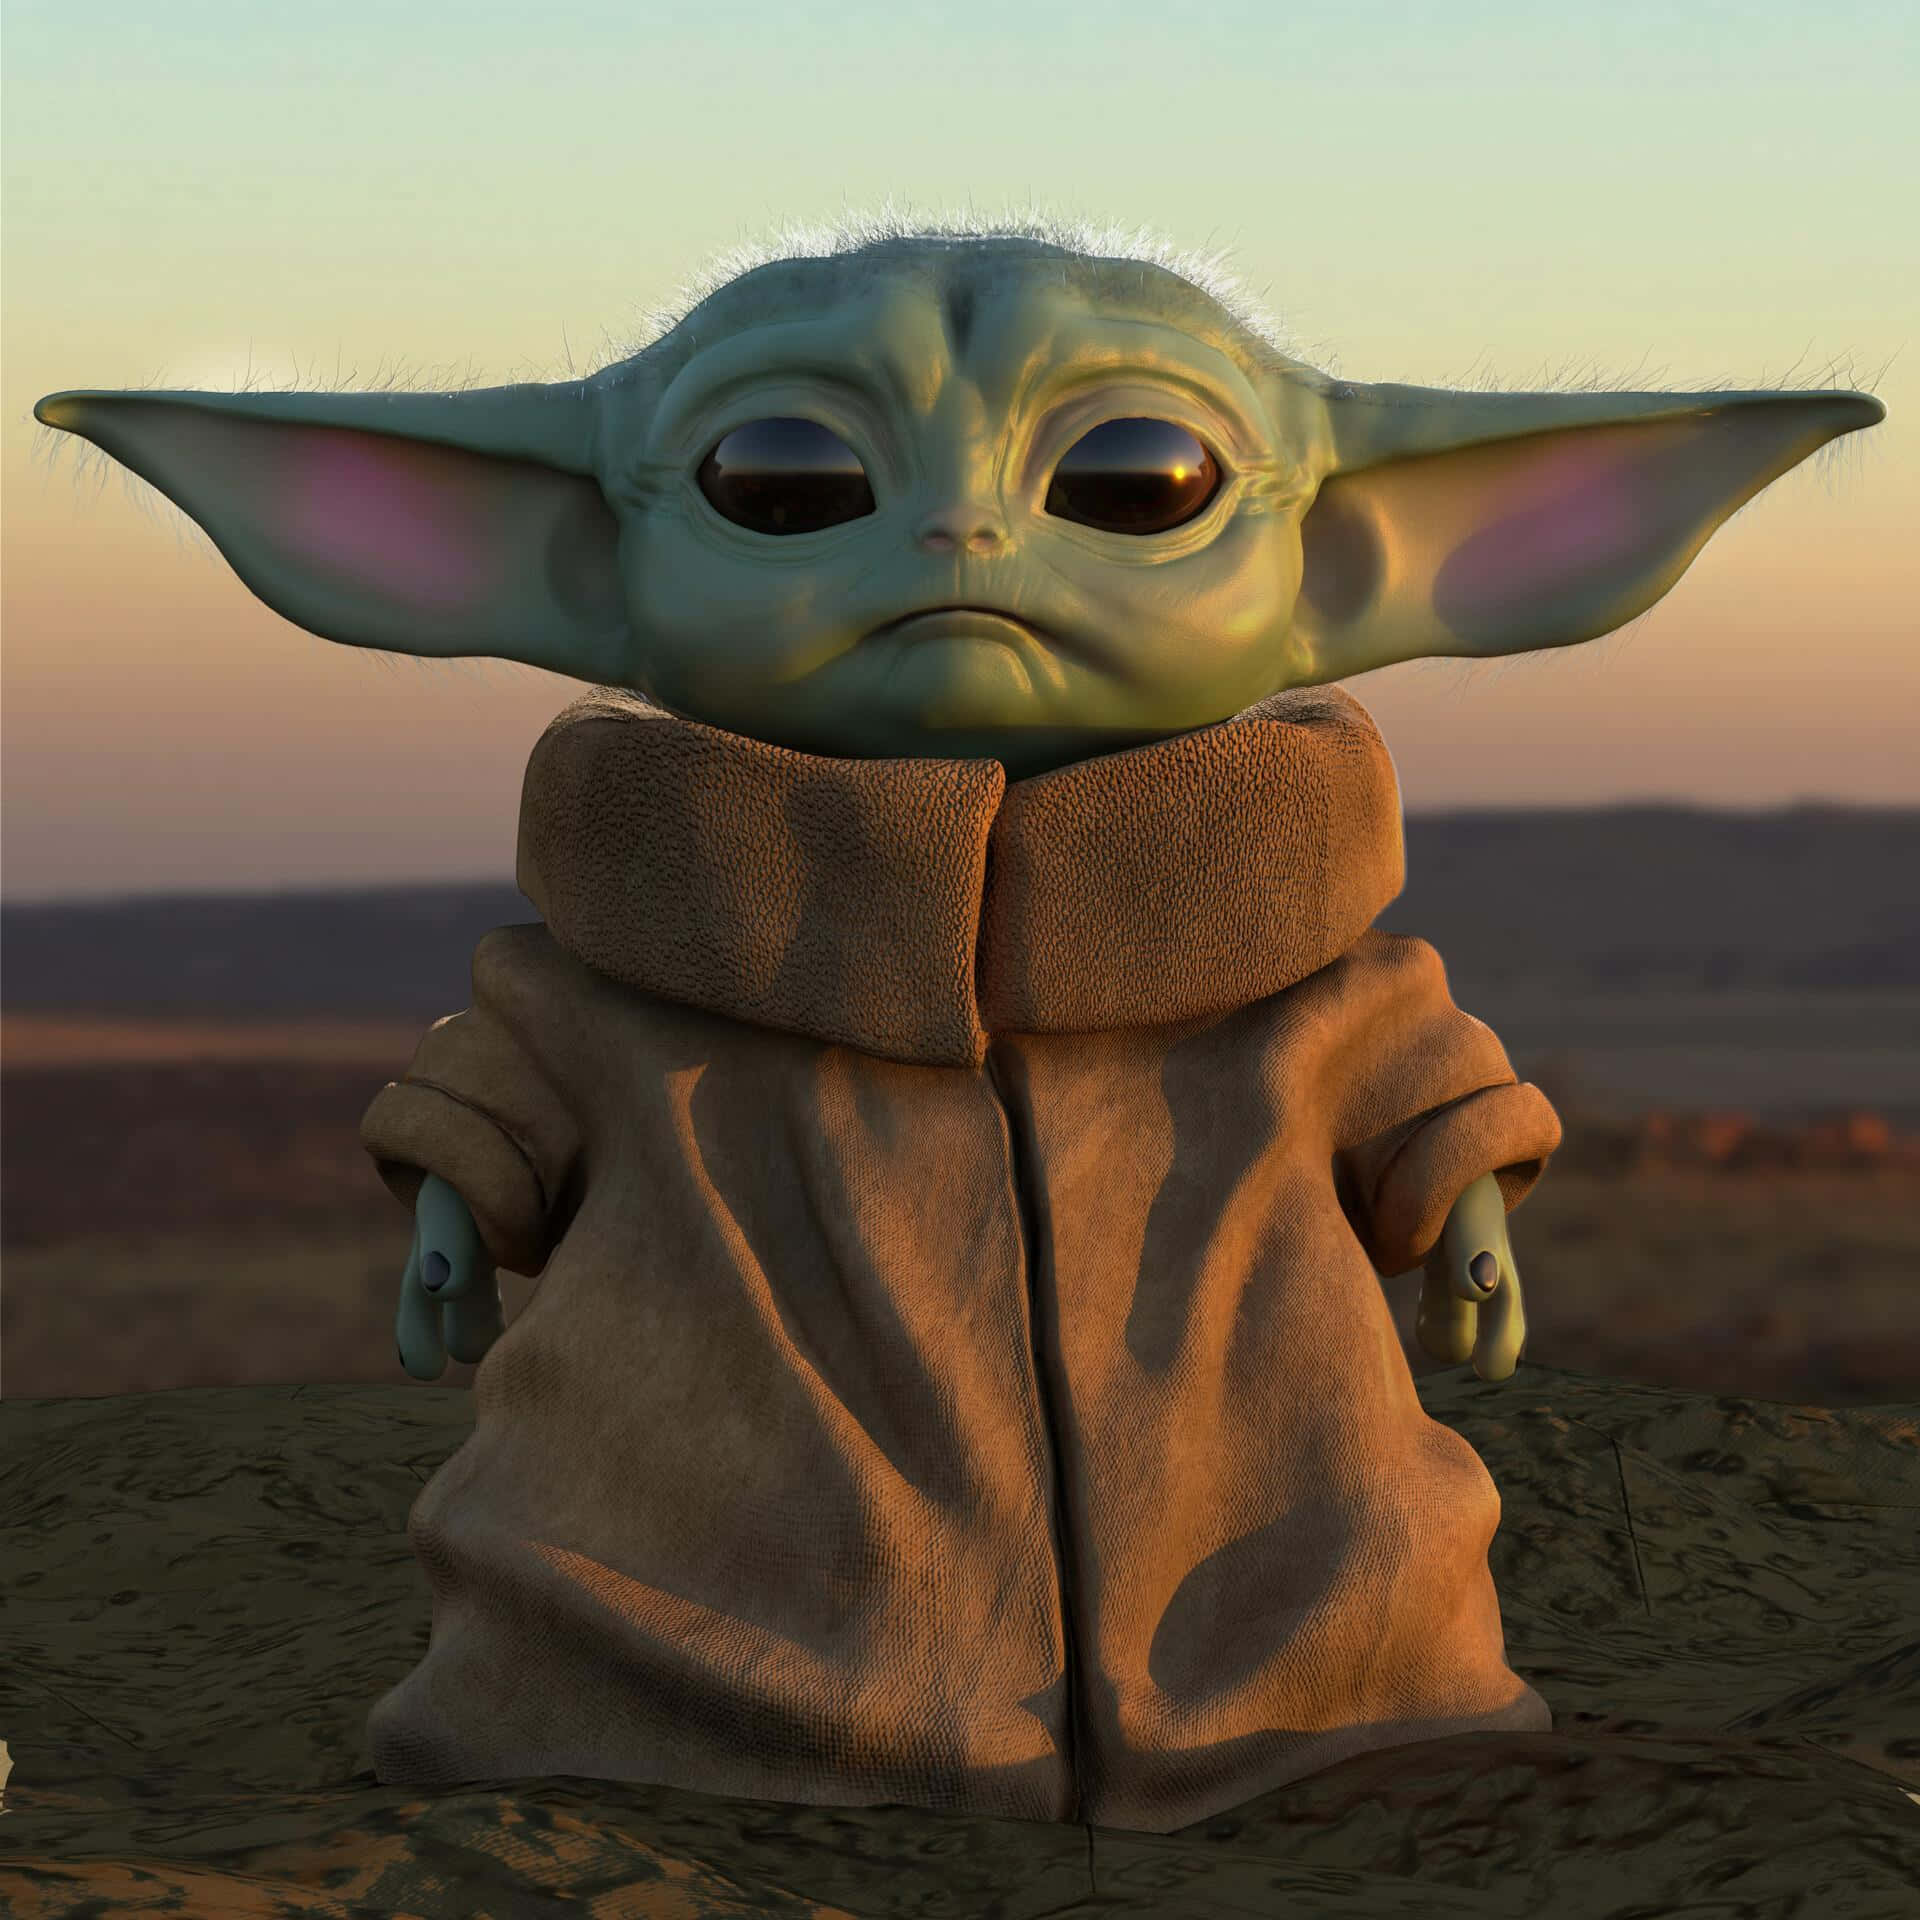 Adorable Baby Yoda